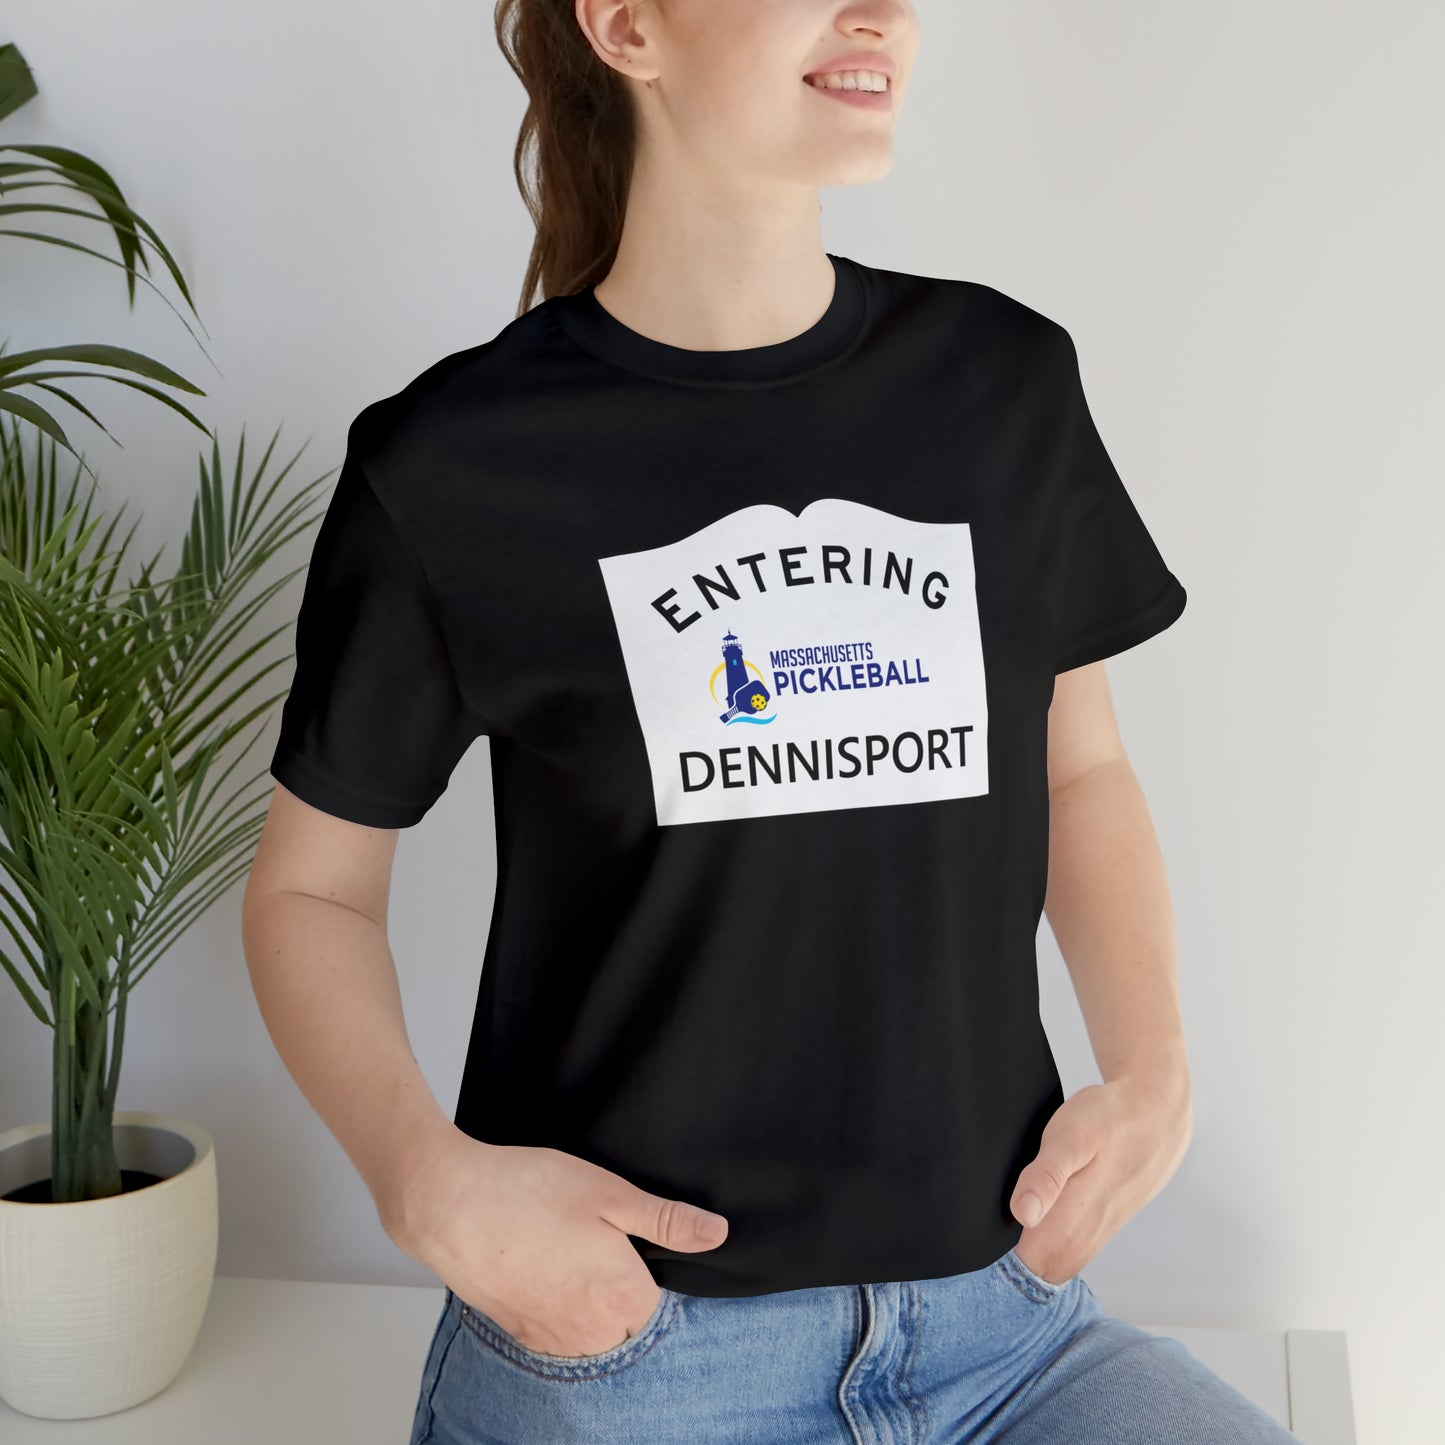 Dennisport, Mass Pickleball Short Sleeve T-Shirt